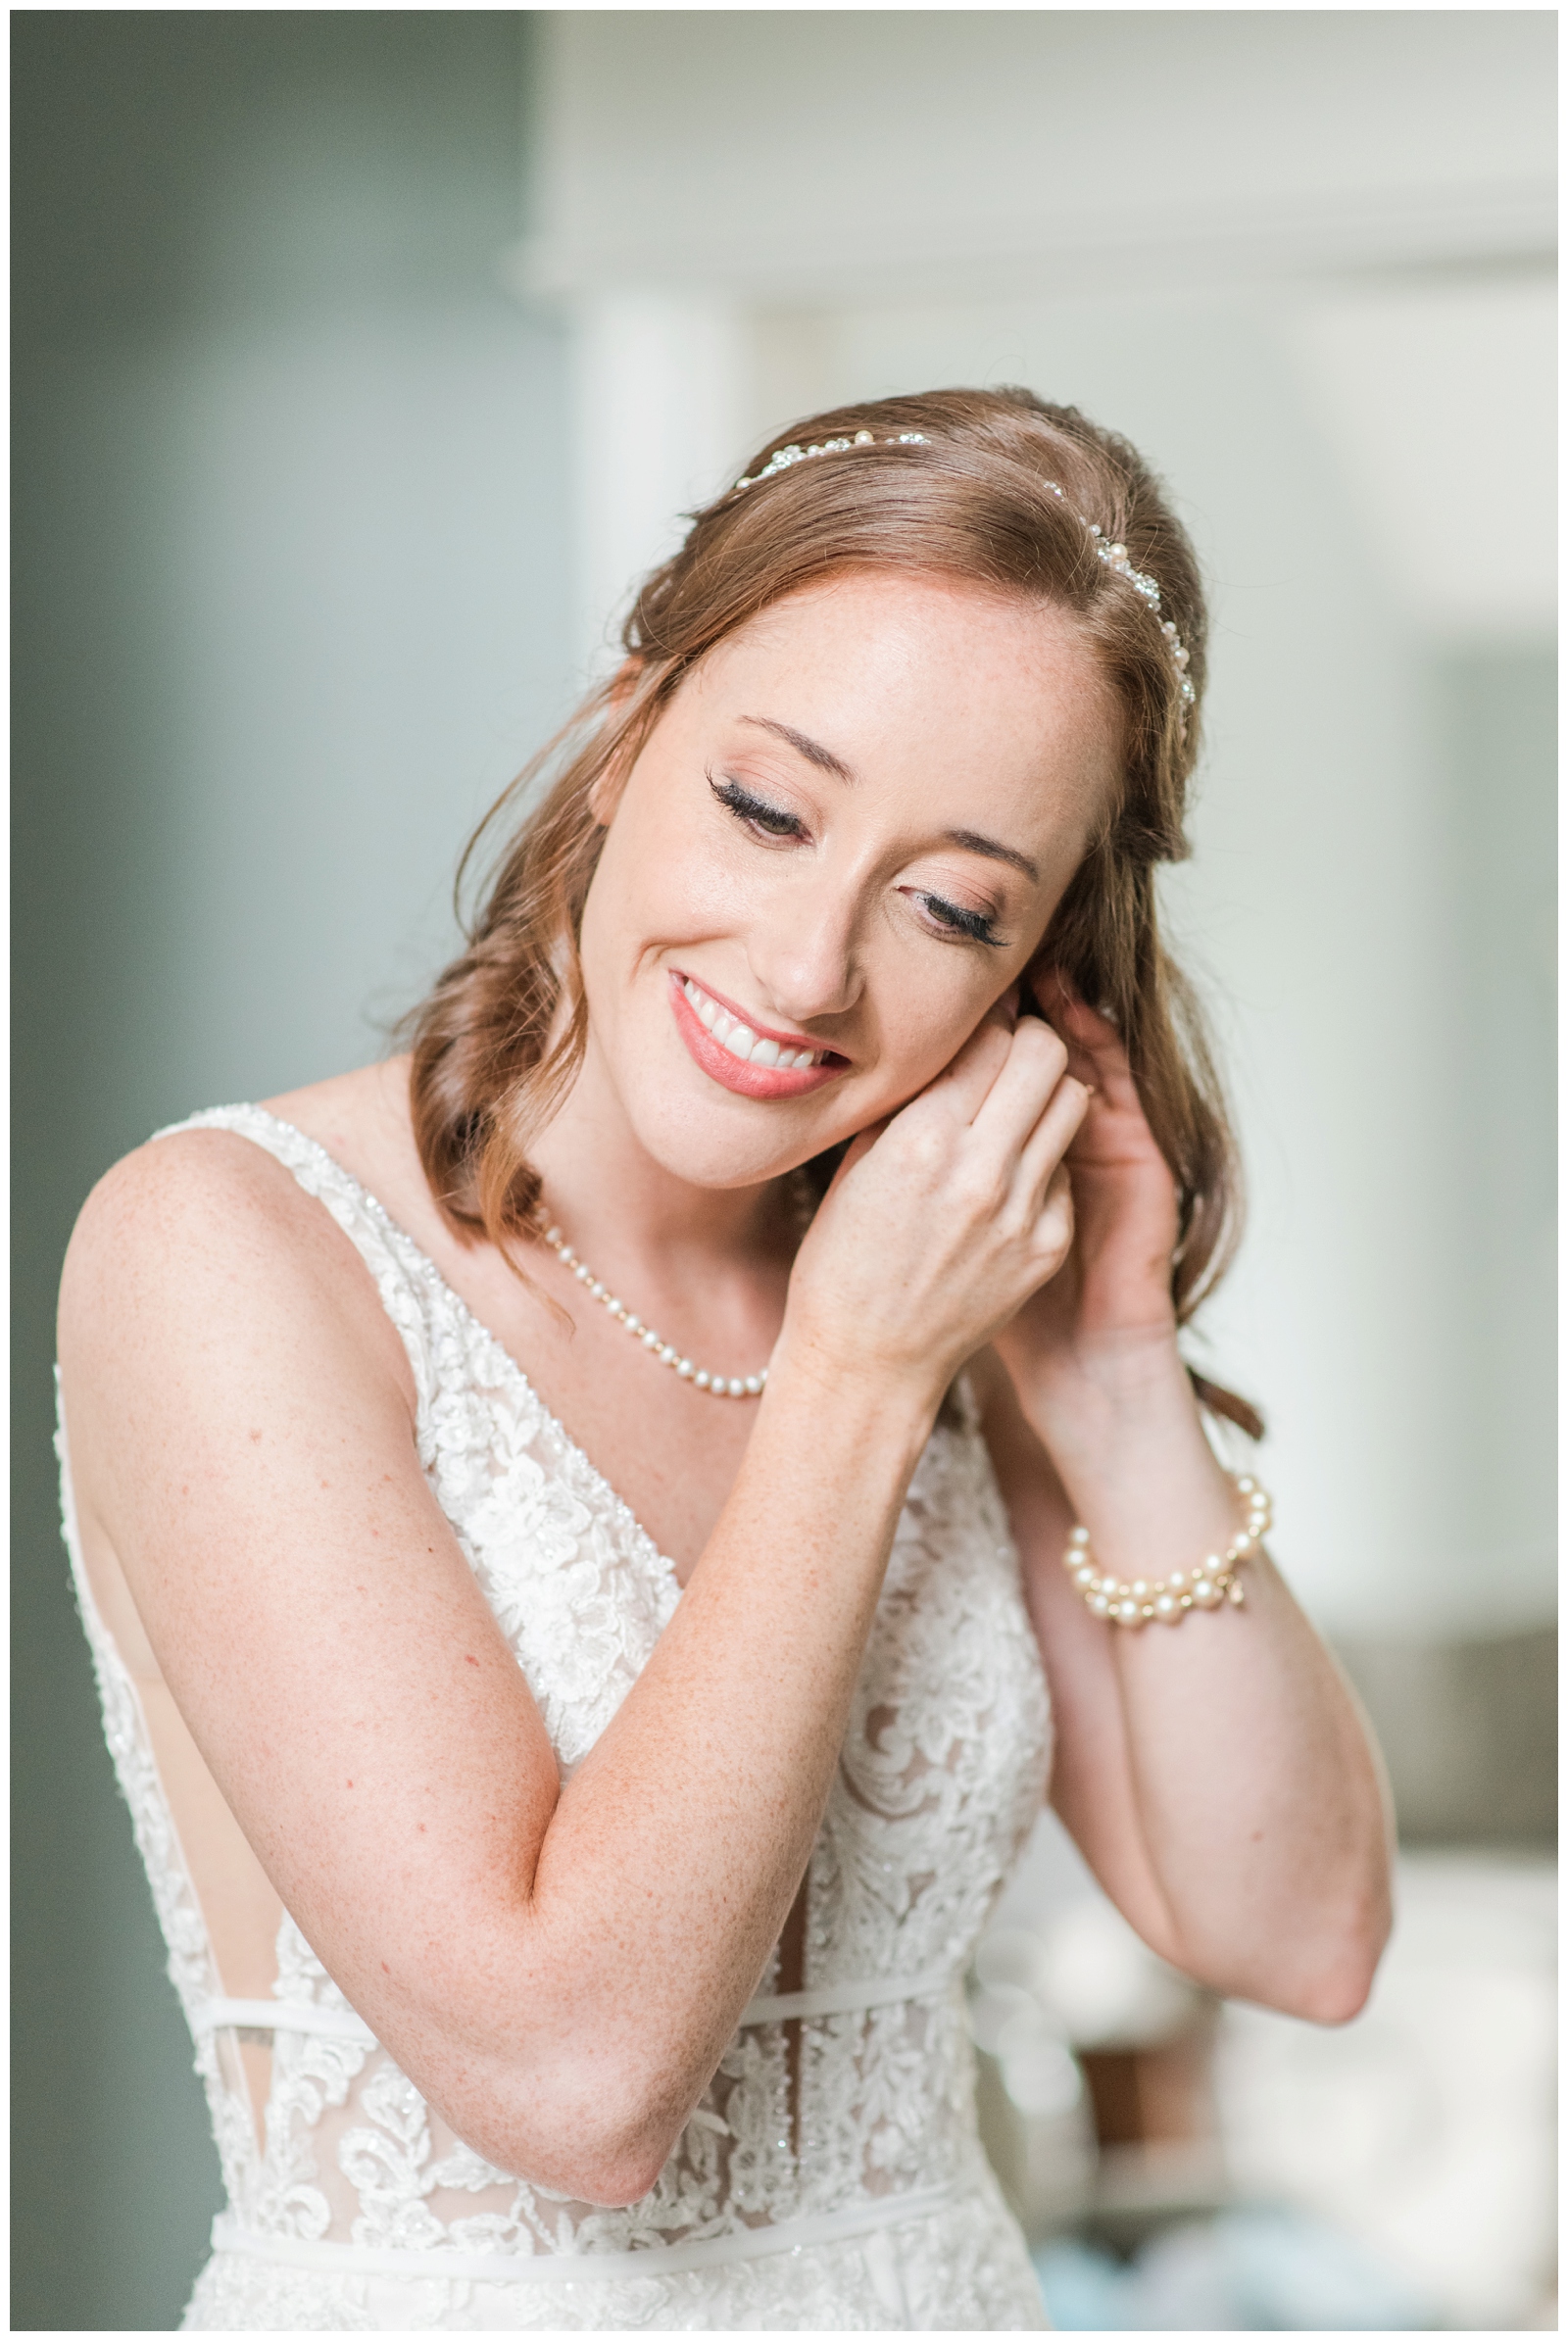 Ohio bride adjusts earrings before wedding day